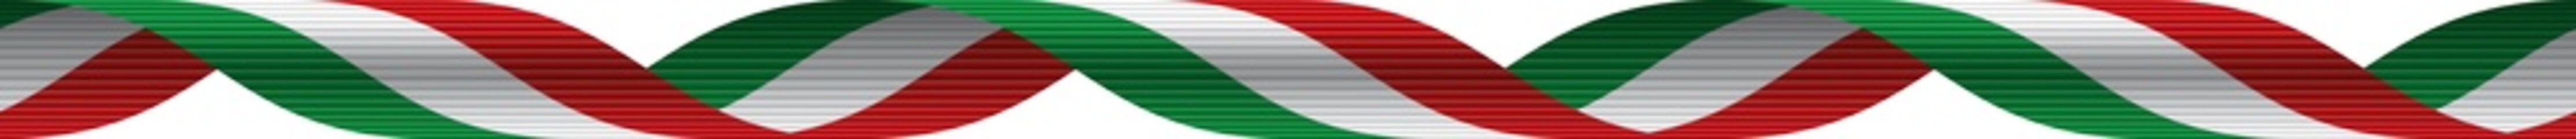 Nastro tricolore italiano - Italian ribbon - 49568042